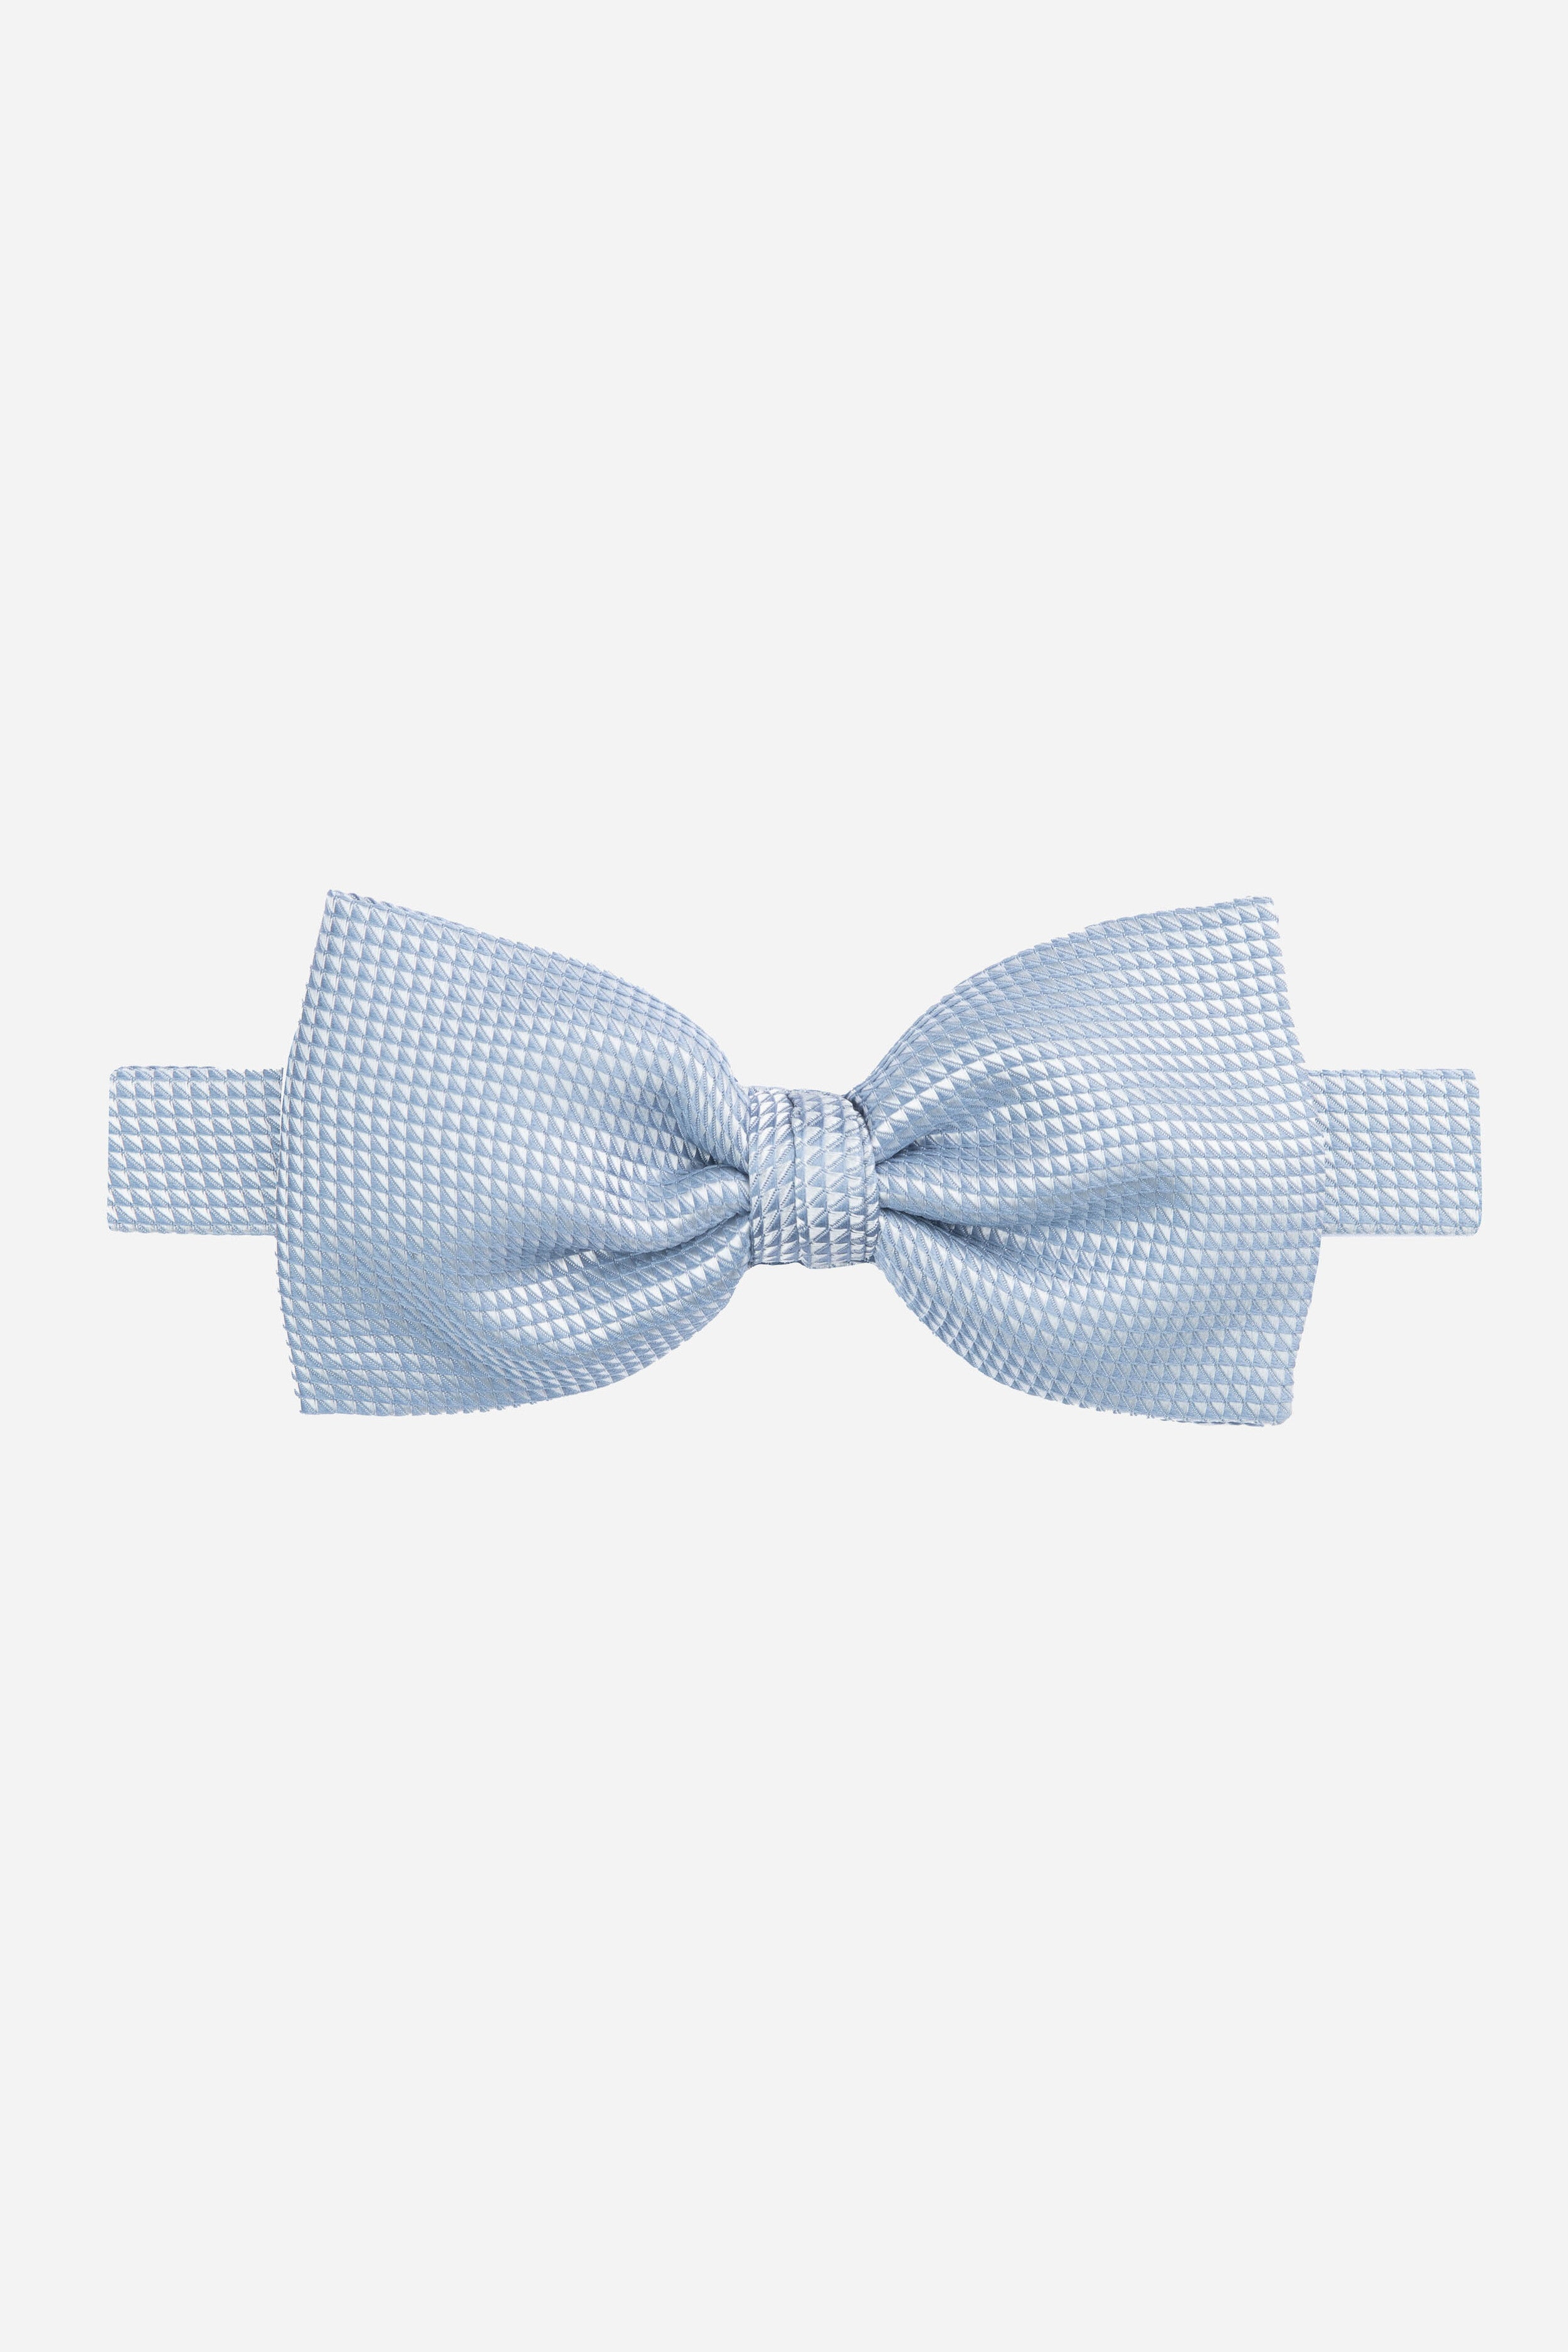 Ptterned bow tie - Light blue pattern